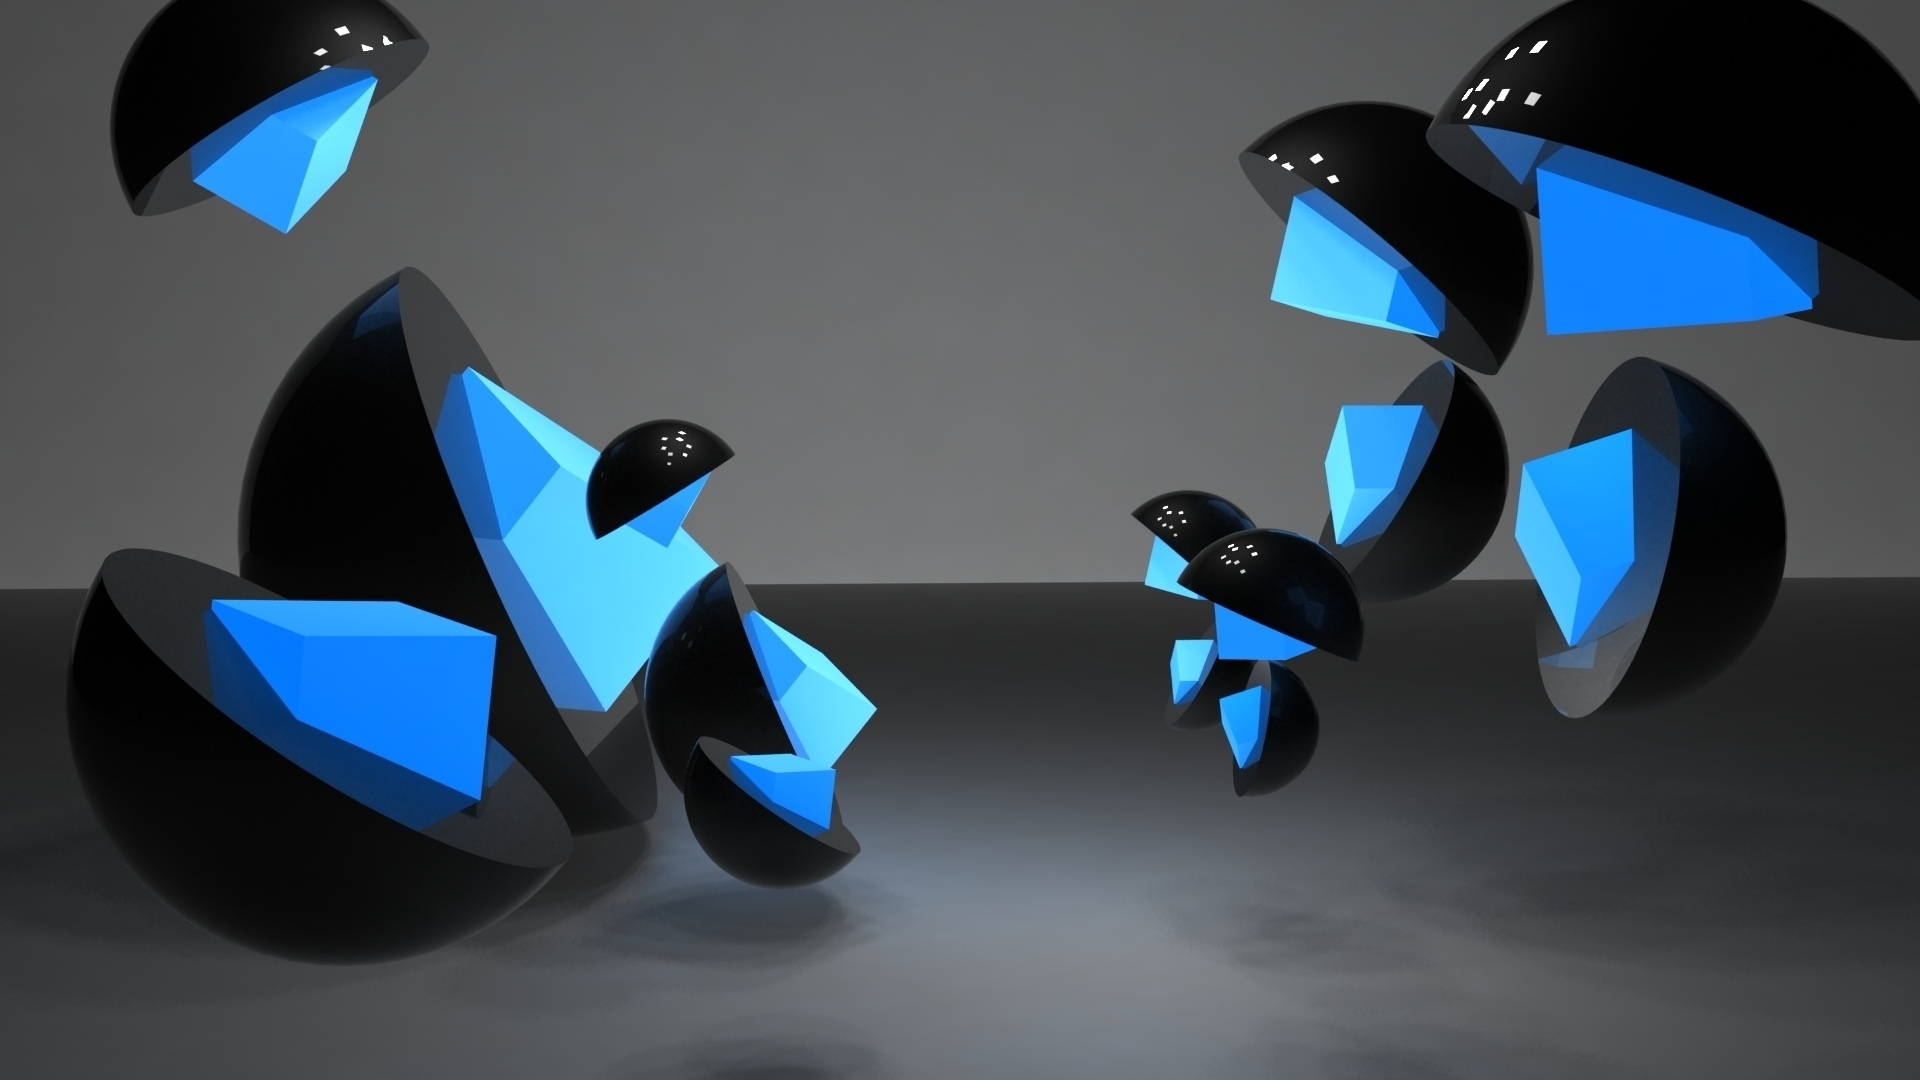 Abstract 3d Cg Digital Art Shapes Contrast Black Blue Float Wallpaper